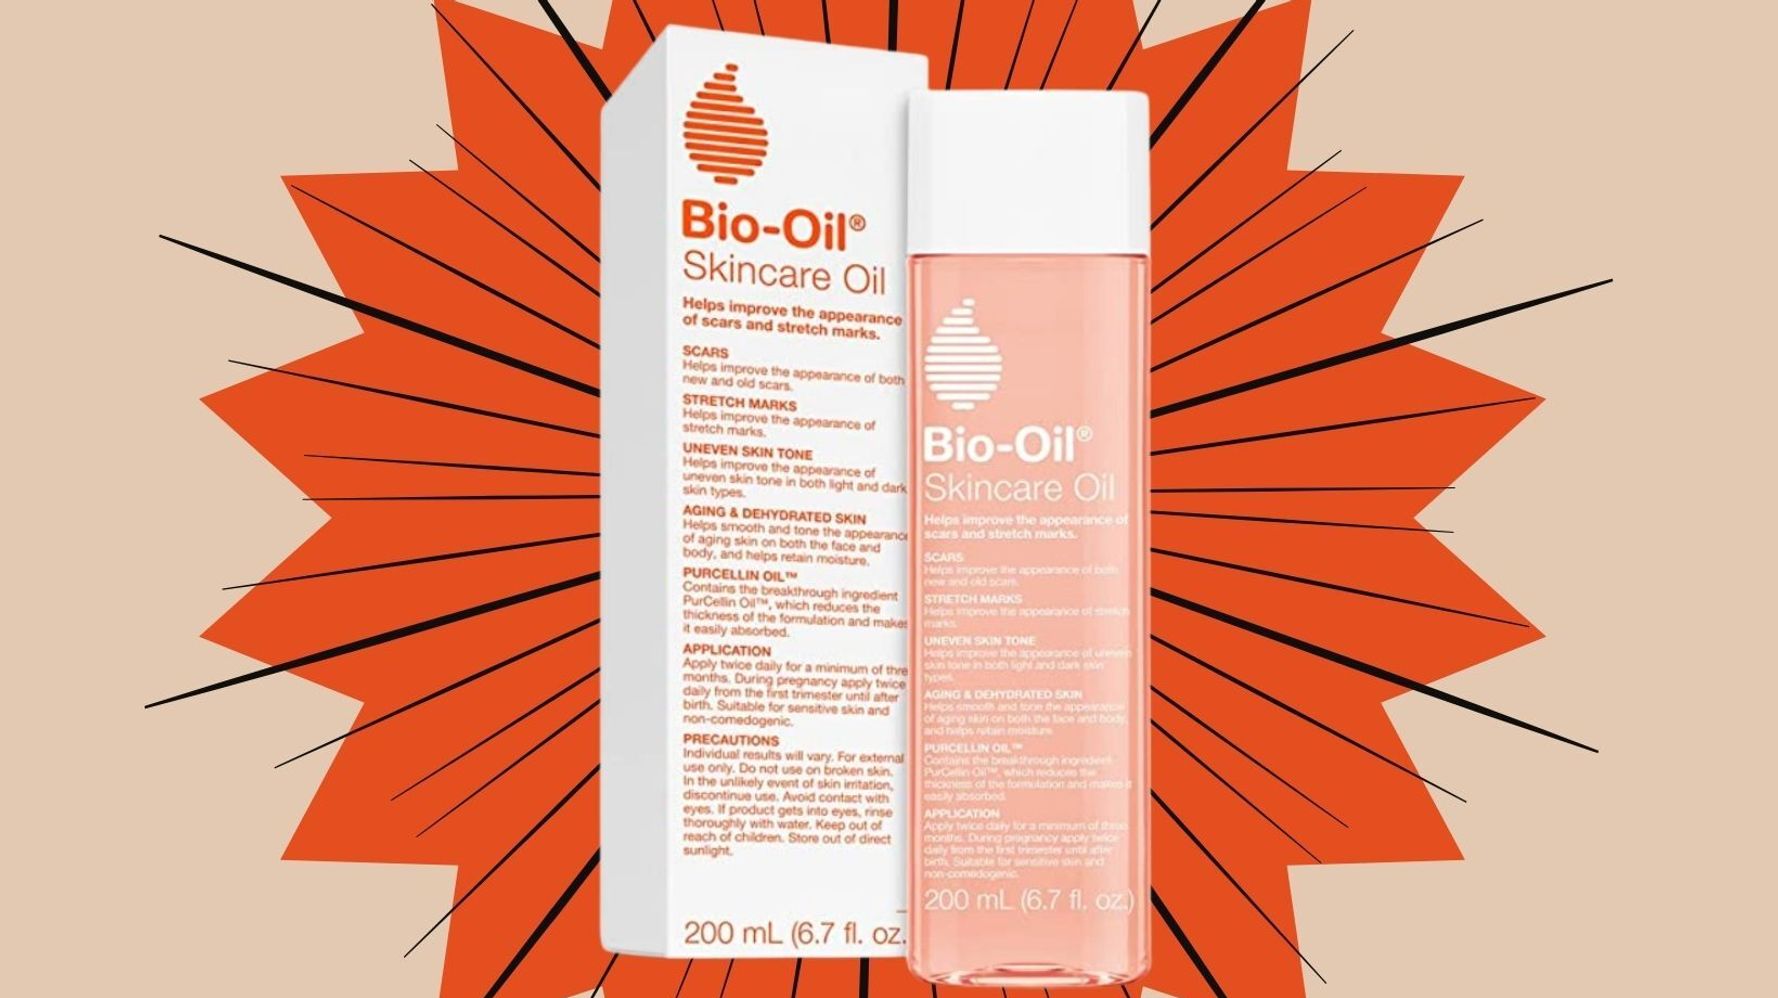 Skincare Oil - Bio-Oil